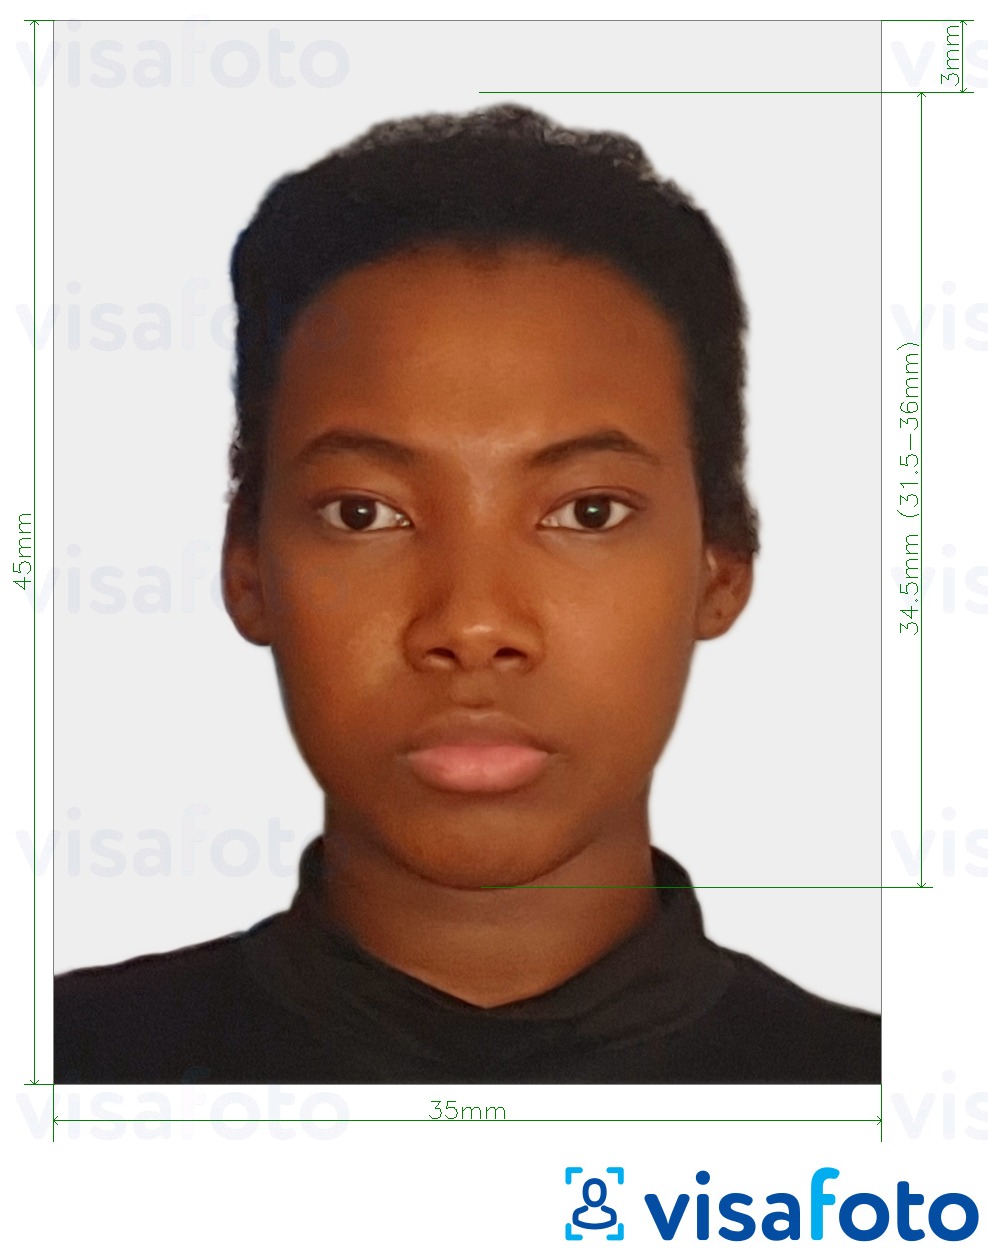 सटीक आकार विनिर्देश के साथ जिम्बाब्वे पासपोर्ट 3.5x4.5 सेमी (35x45 मिमी) के लिए तस्वीर का उदाहरण